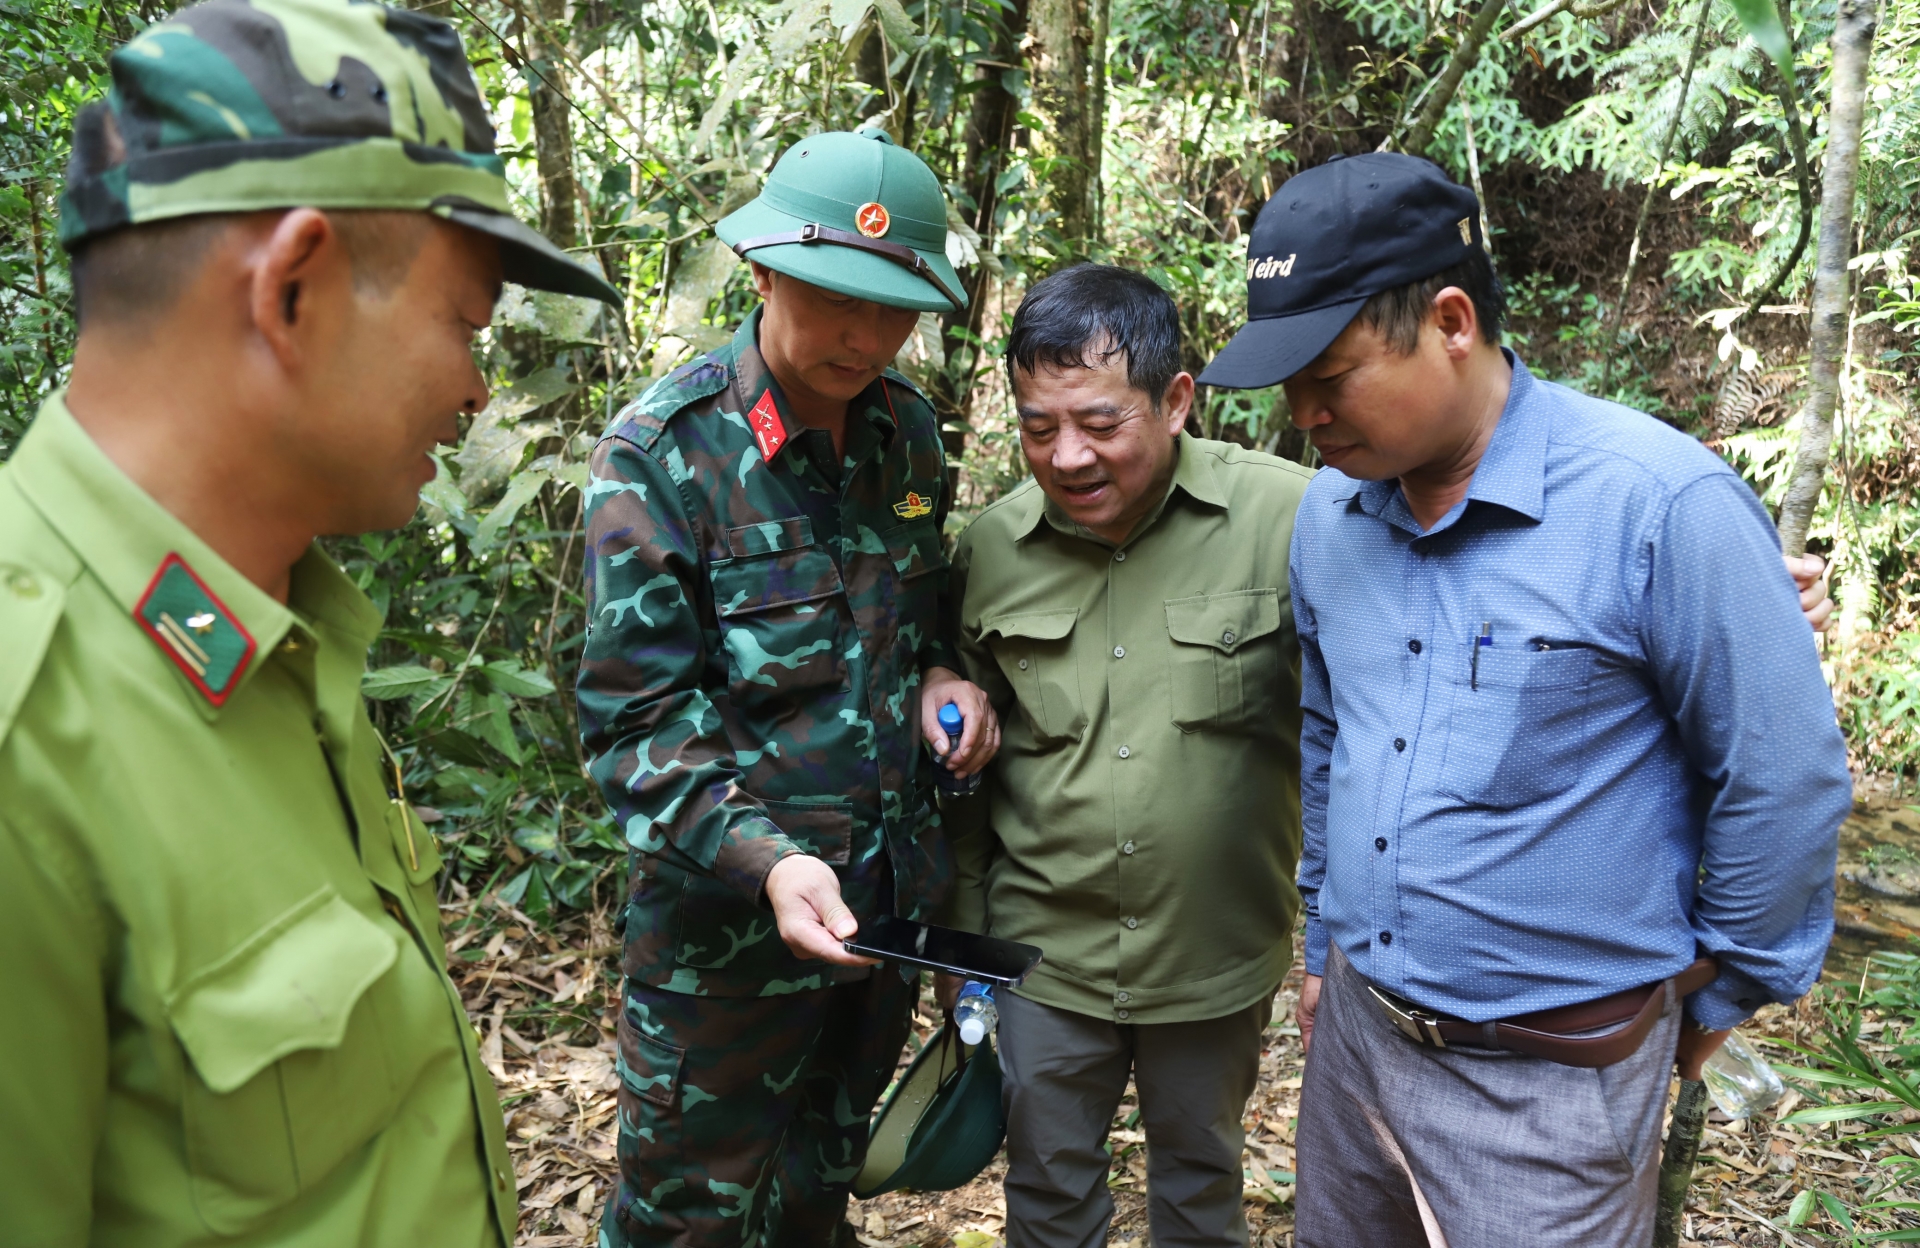 Lãnh đạo Ban Chỉ huy Quân sự TP Bảo Lộc báo cáo với Chủ tịch UBND thành phố về tọa độ lâm phận rừng tự nhiên do đơn vị quản lý